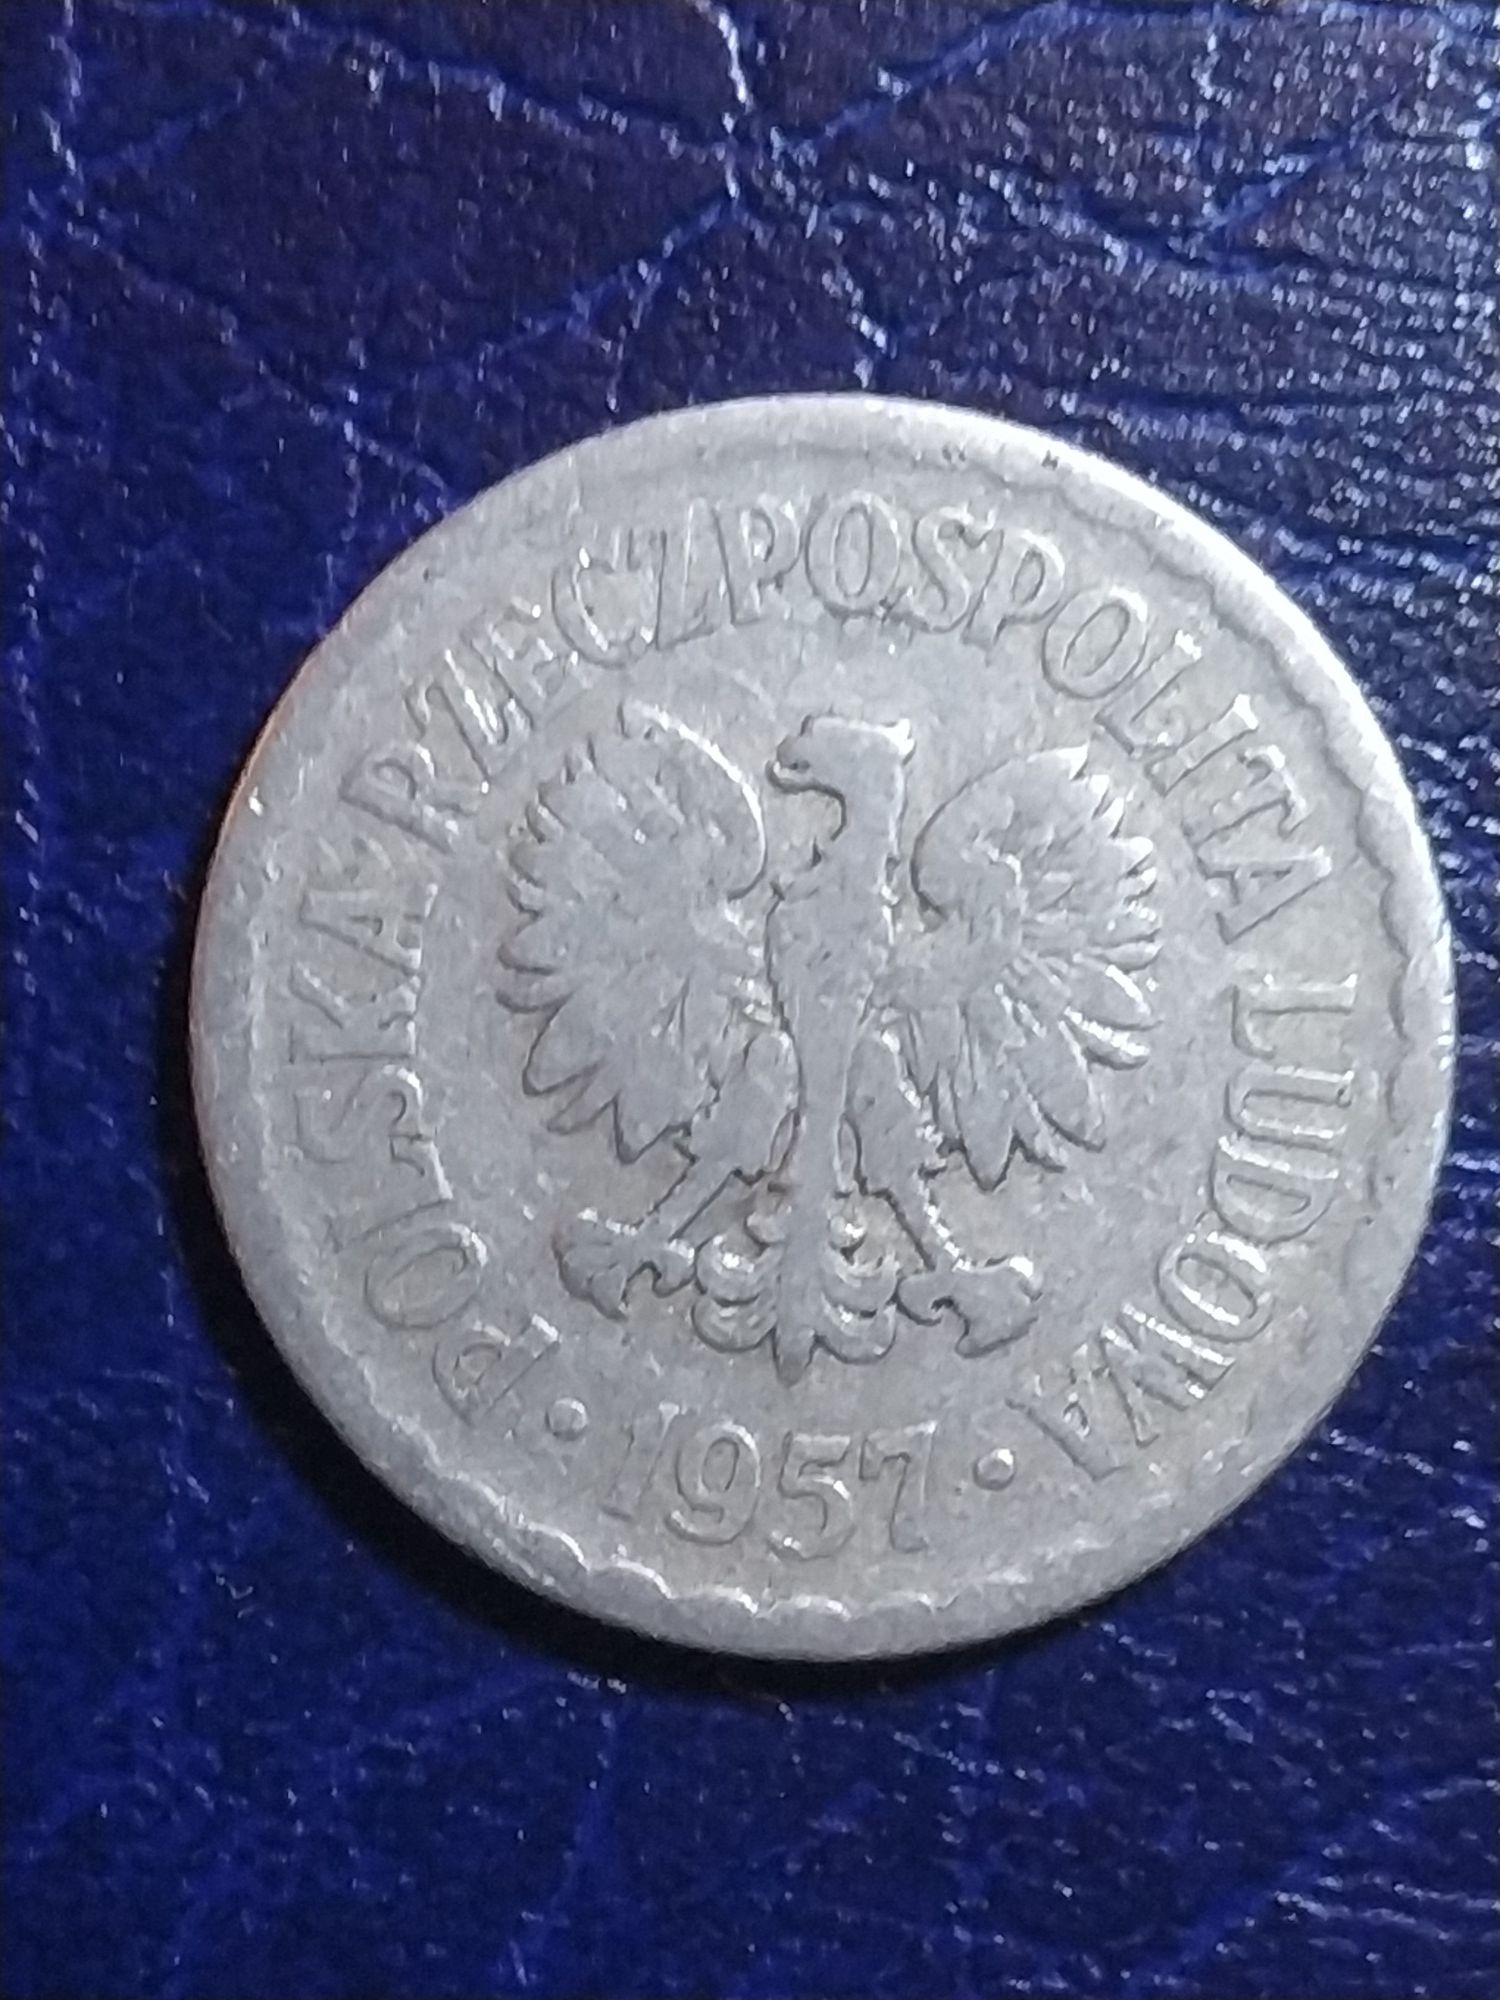 Moneta 1 zł z PRLu AL BZ z roku 1957 - rzadki rocznik!